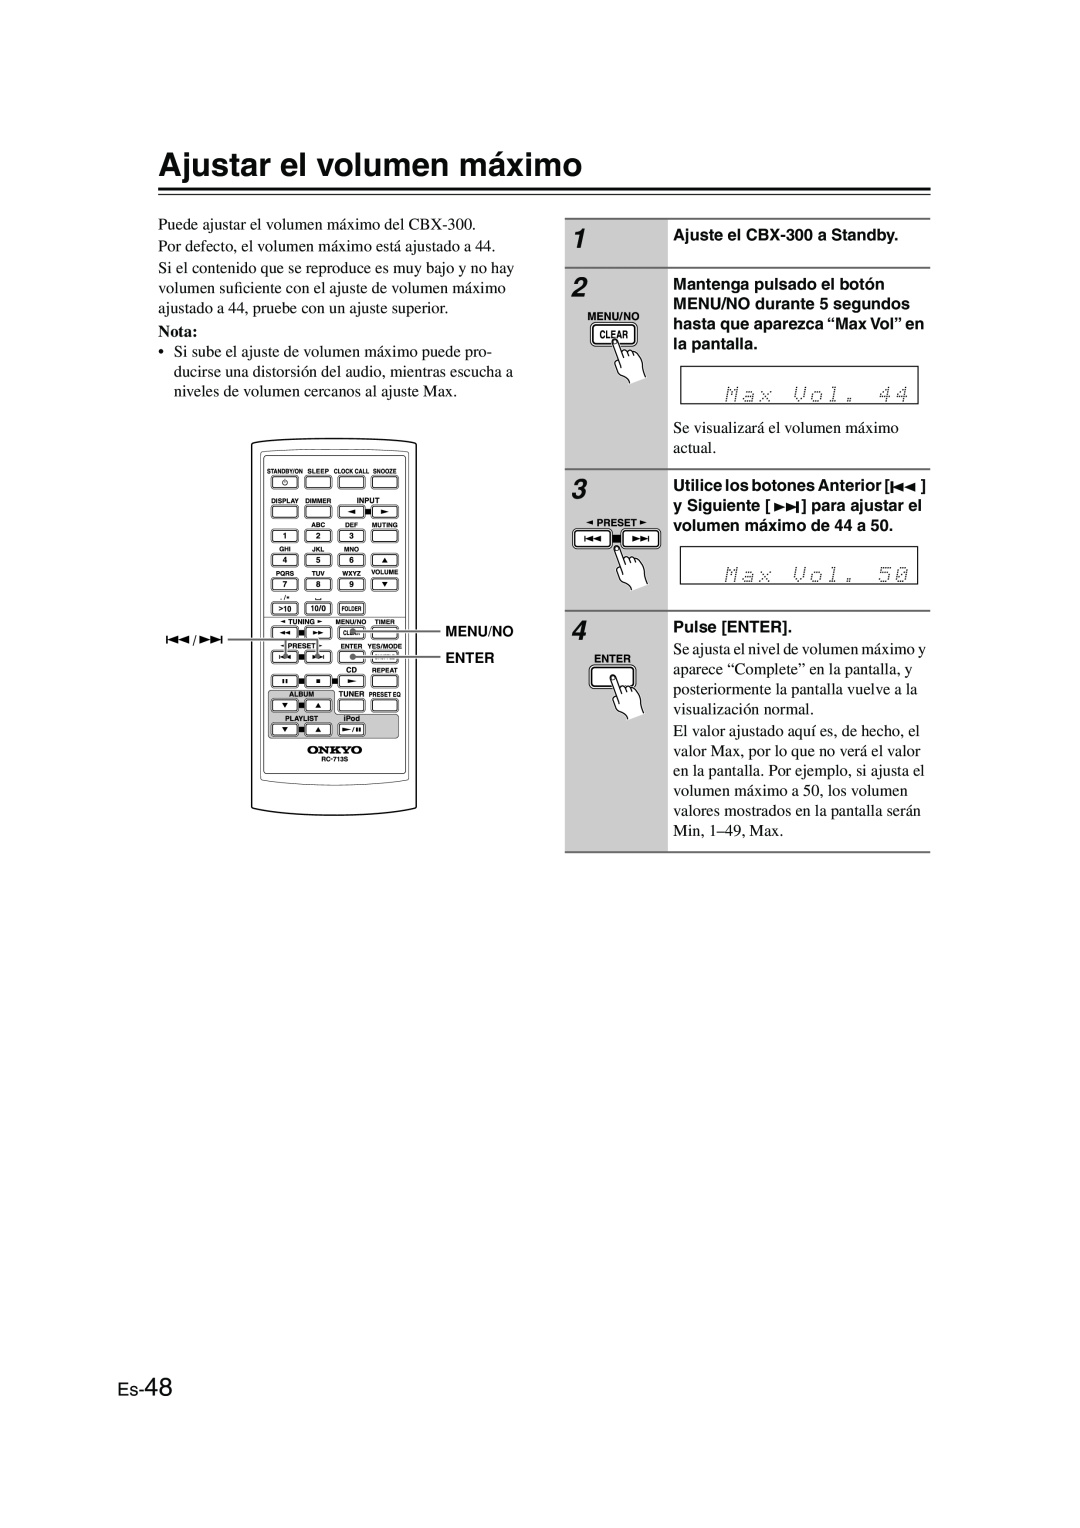 Onkyo CBX-300 instruction manual Ajustar el volumen máximo, Es-48, Nota 